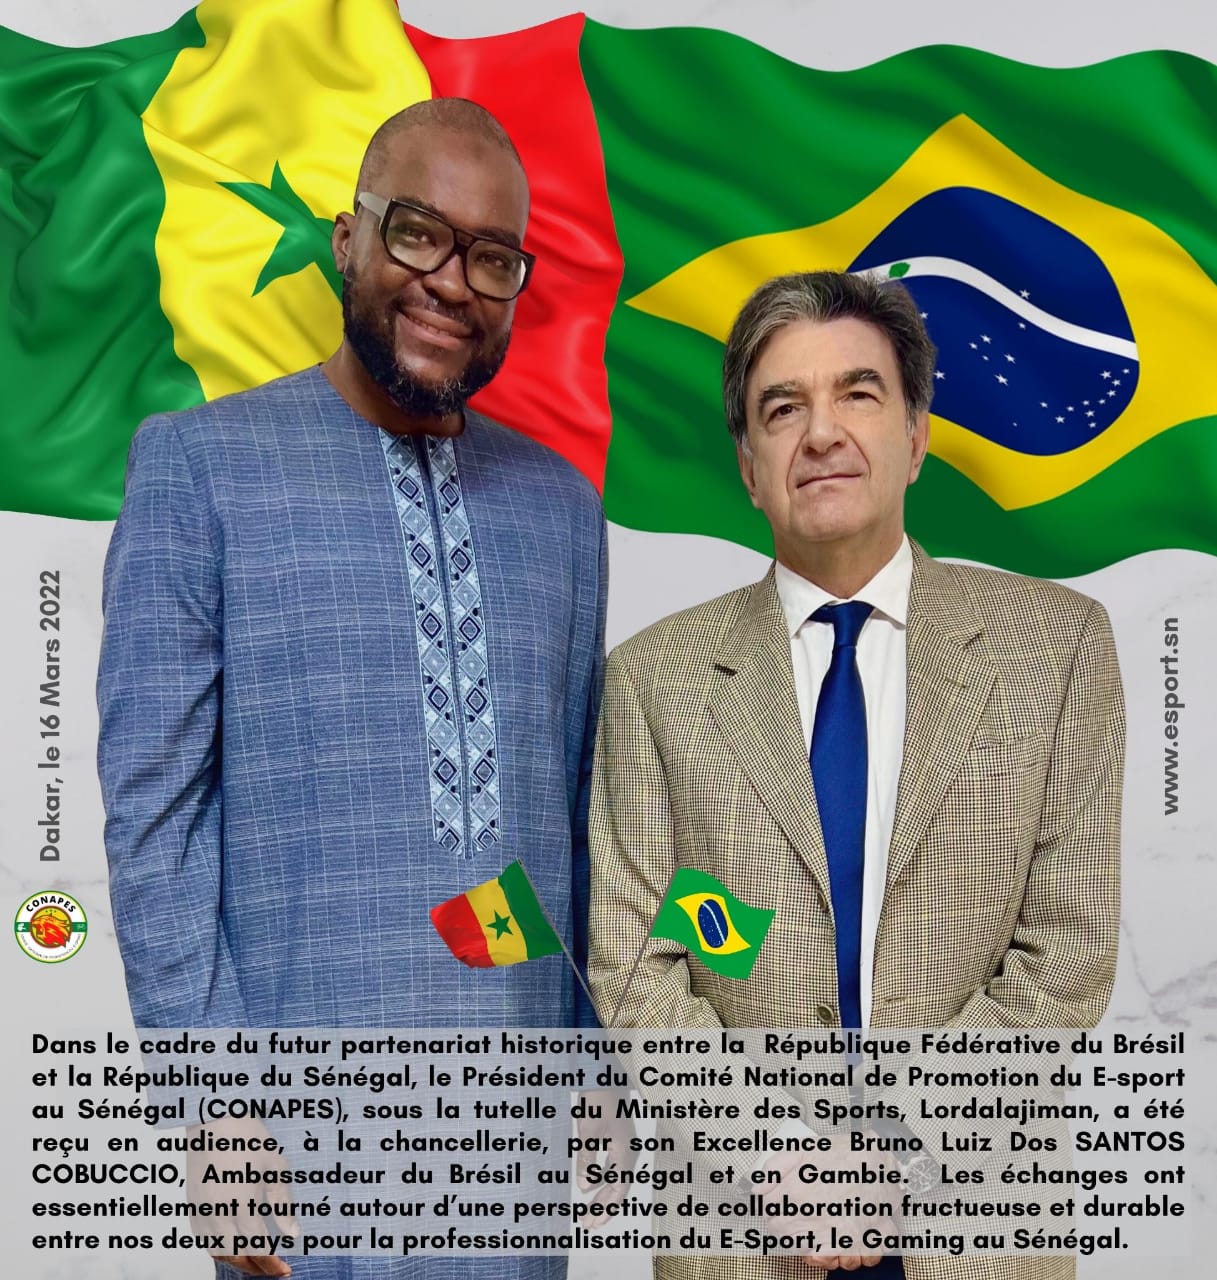 Le Sénégal et le Brésil envisagent un partenariat historique pour la professionnalisation du E-sport